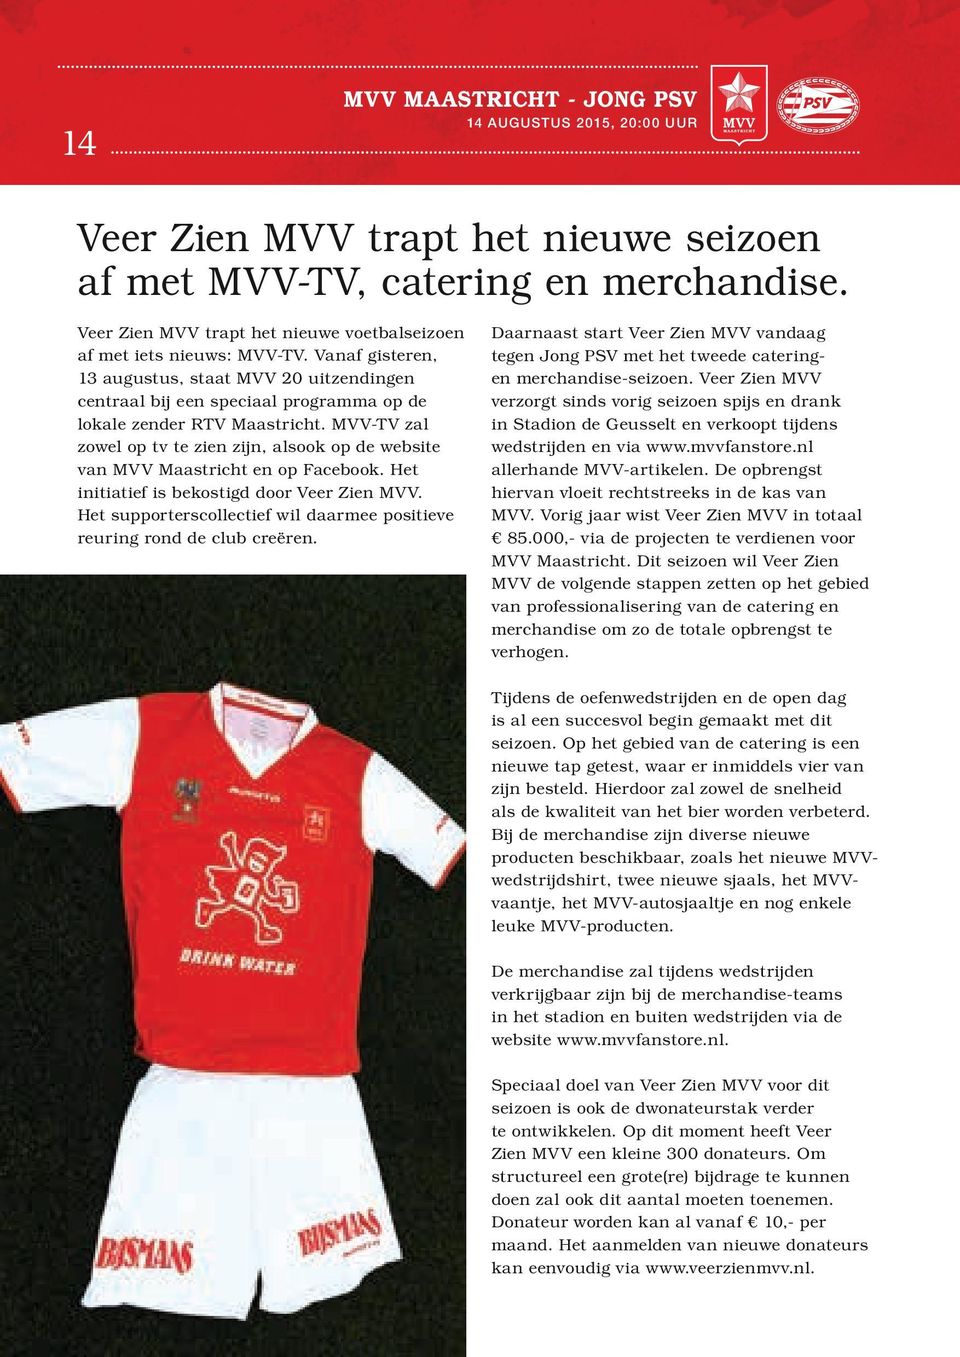 MVV-TV zal zowel op tv te zien zijn, alsook op de website van MVV Maastricht en op Facebook. Het initiatief is bekostigd door Veer Zien MVV.